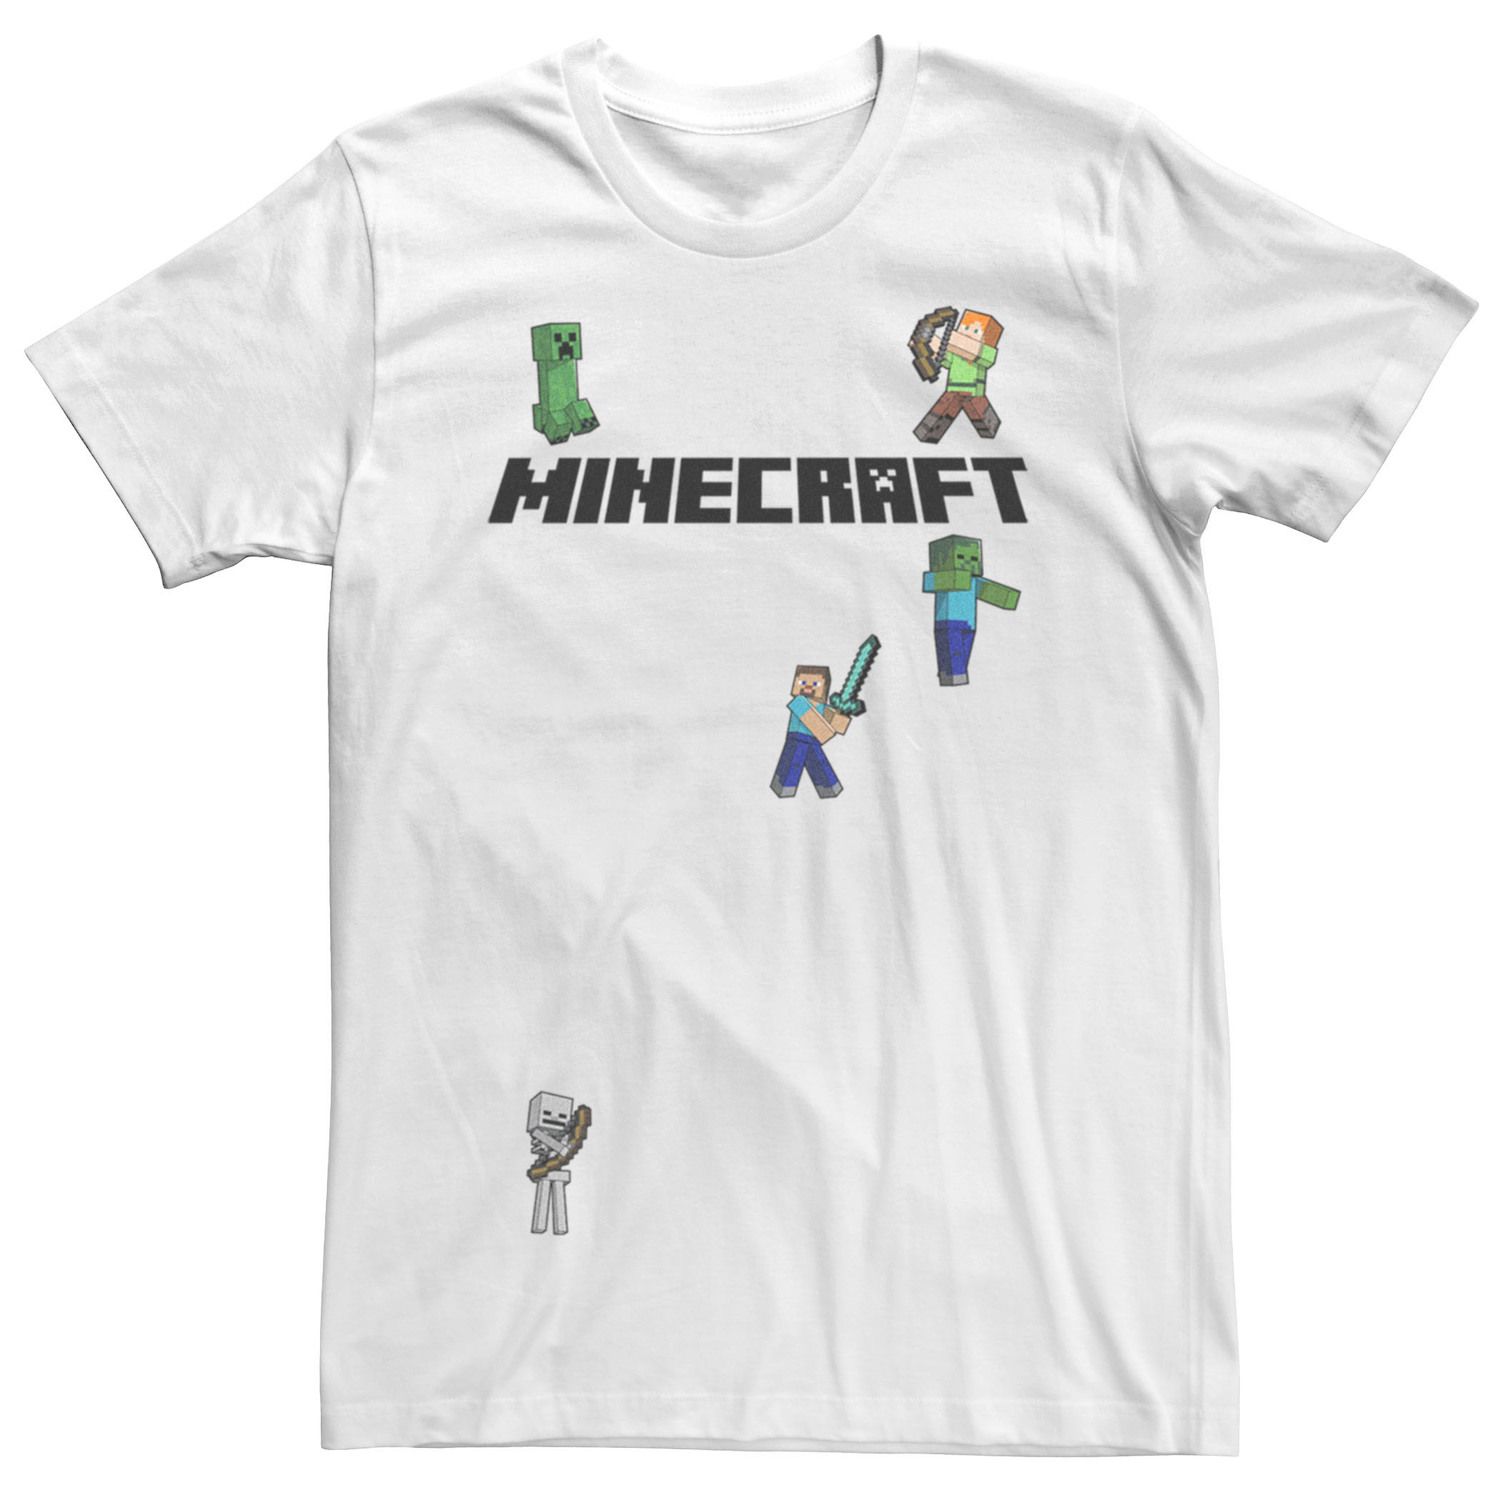 Мужская футболка с логотипом Minecraft Creeper Skeleton Zombie Sprites Overworld Licensed Character светильник minecraft skeleton icon